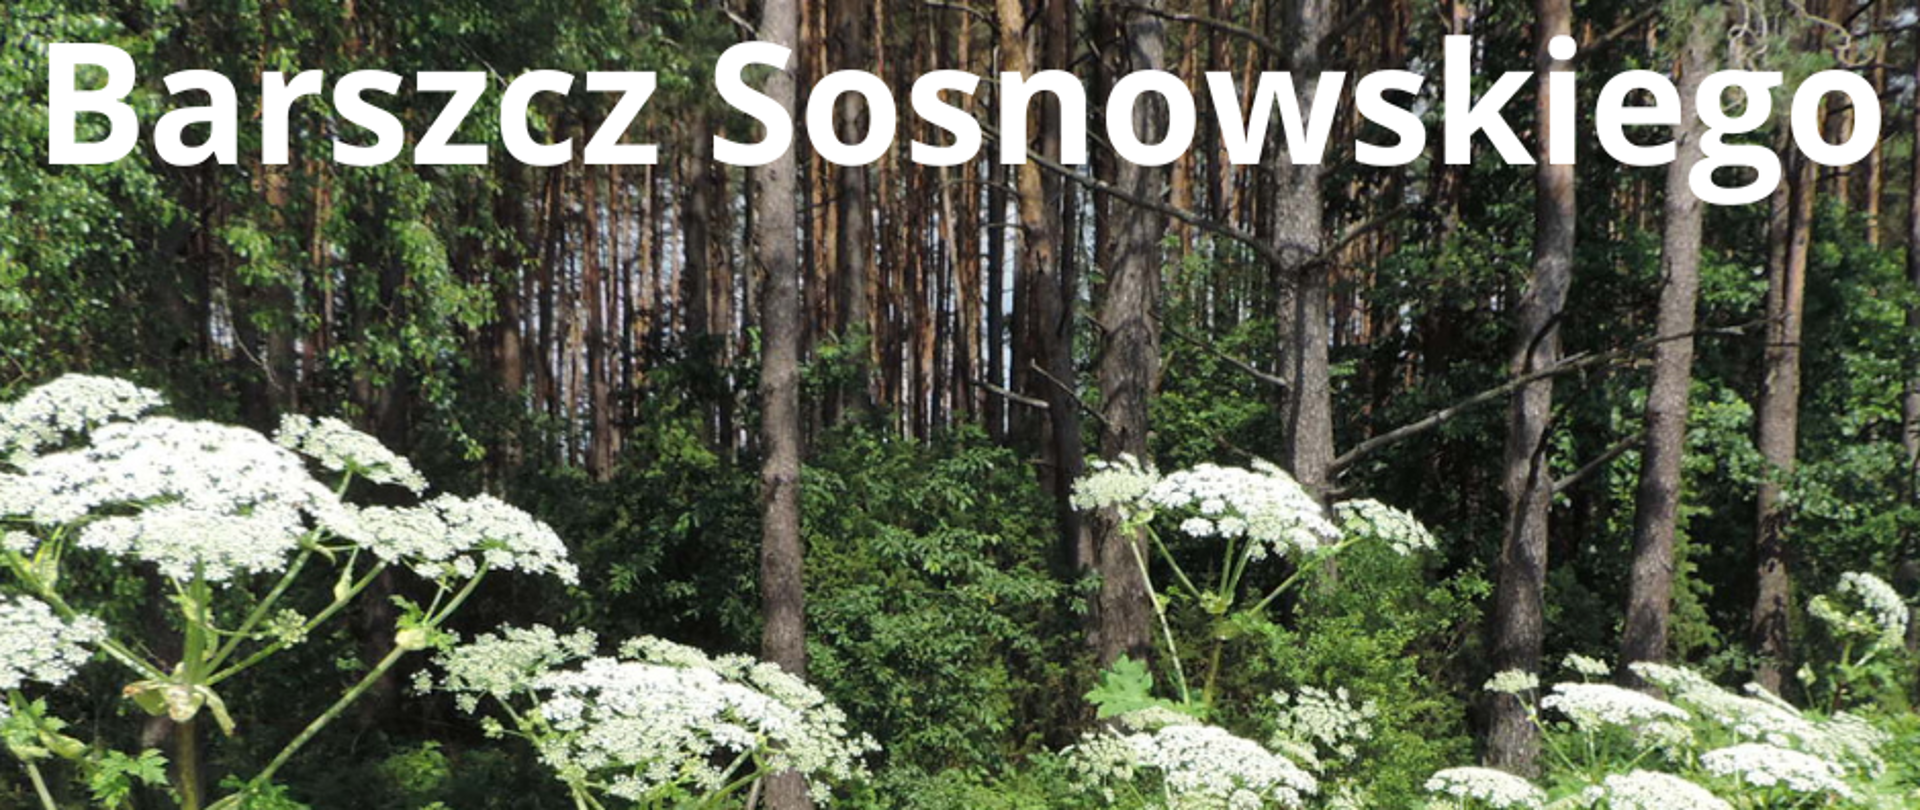 Na zdjęciu znajduje sie Barszcz Sosnowskiego, a w tle widzimy drzewa